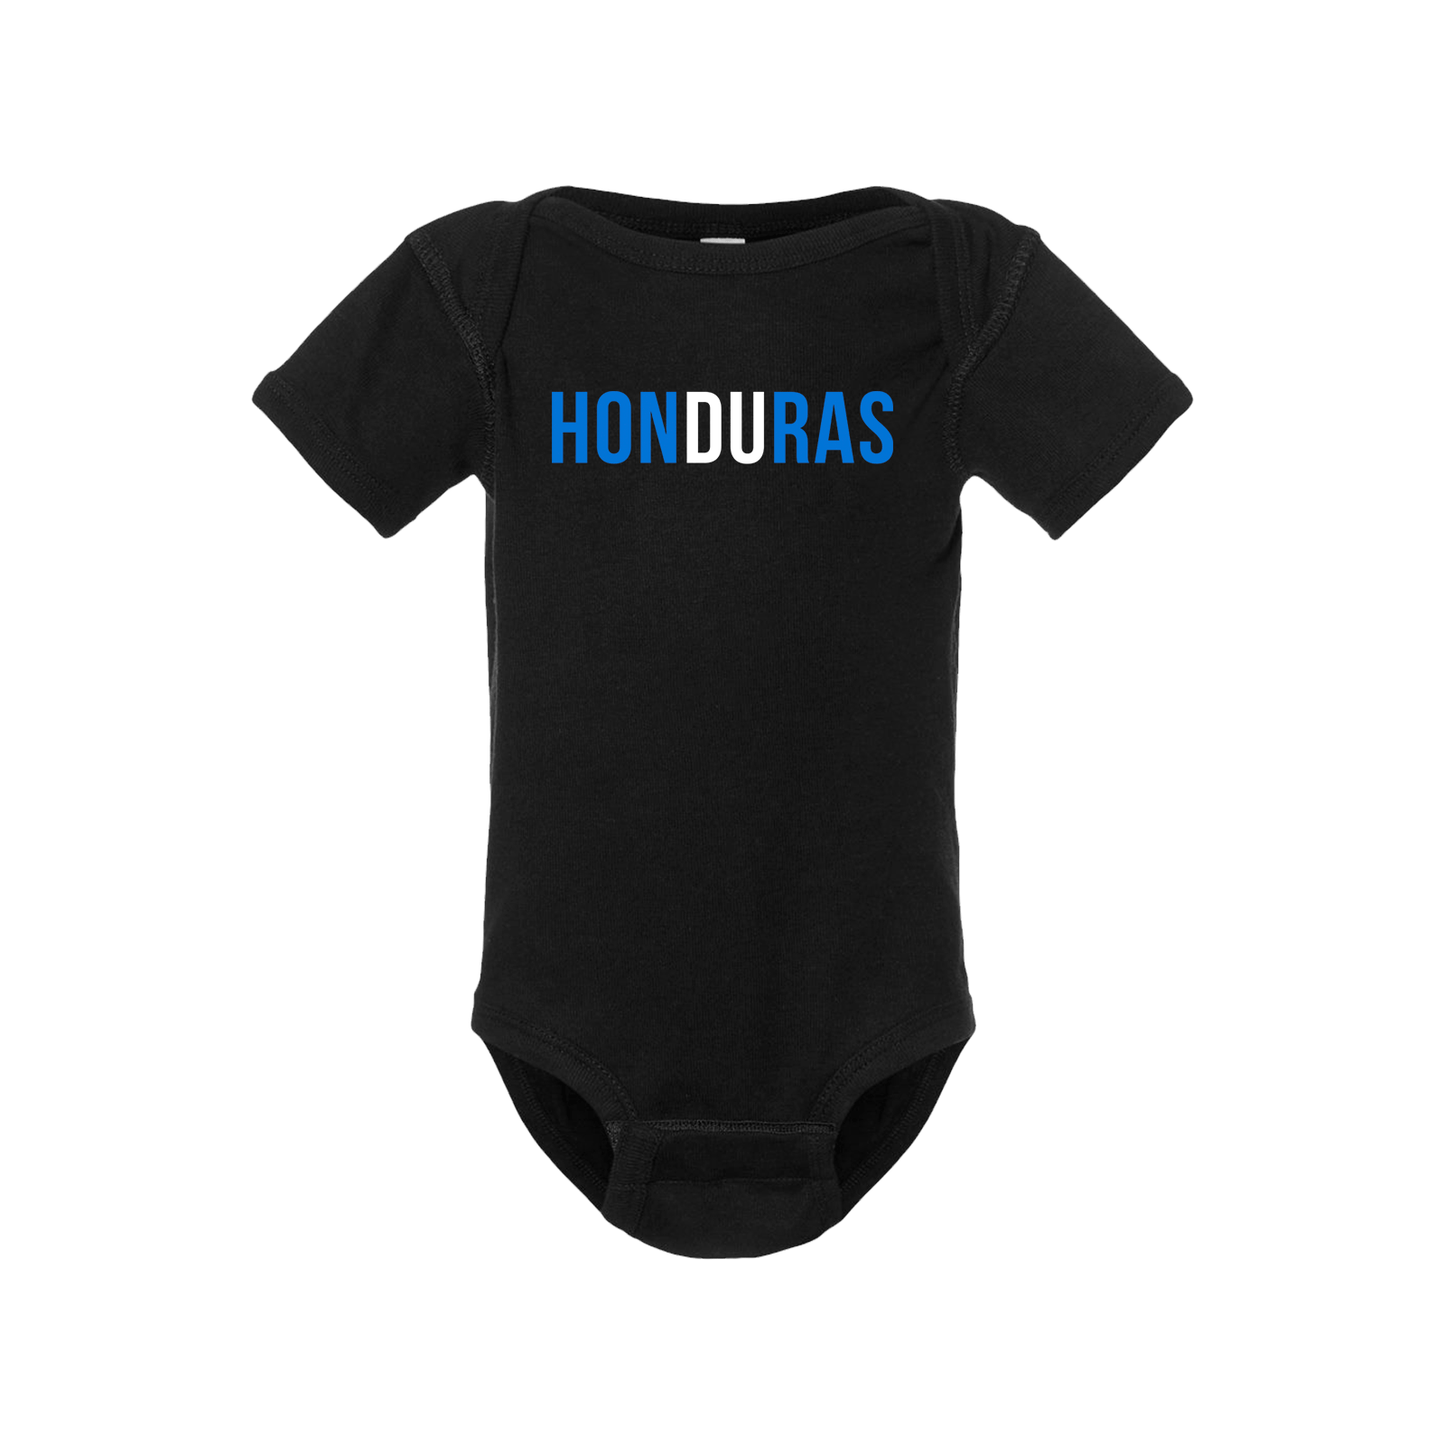 Honduras Short Sleeve Onesie - Babies & Toddlers